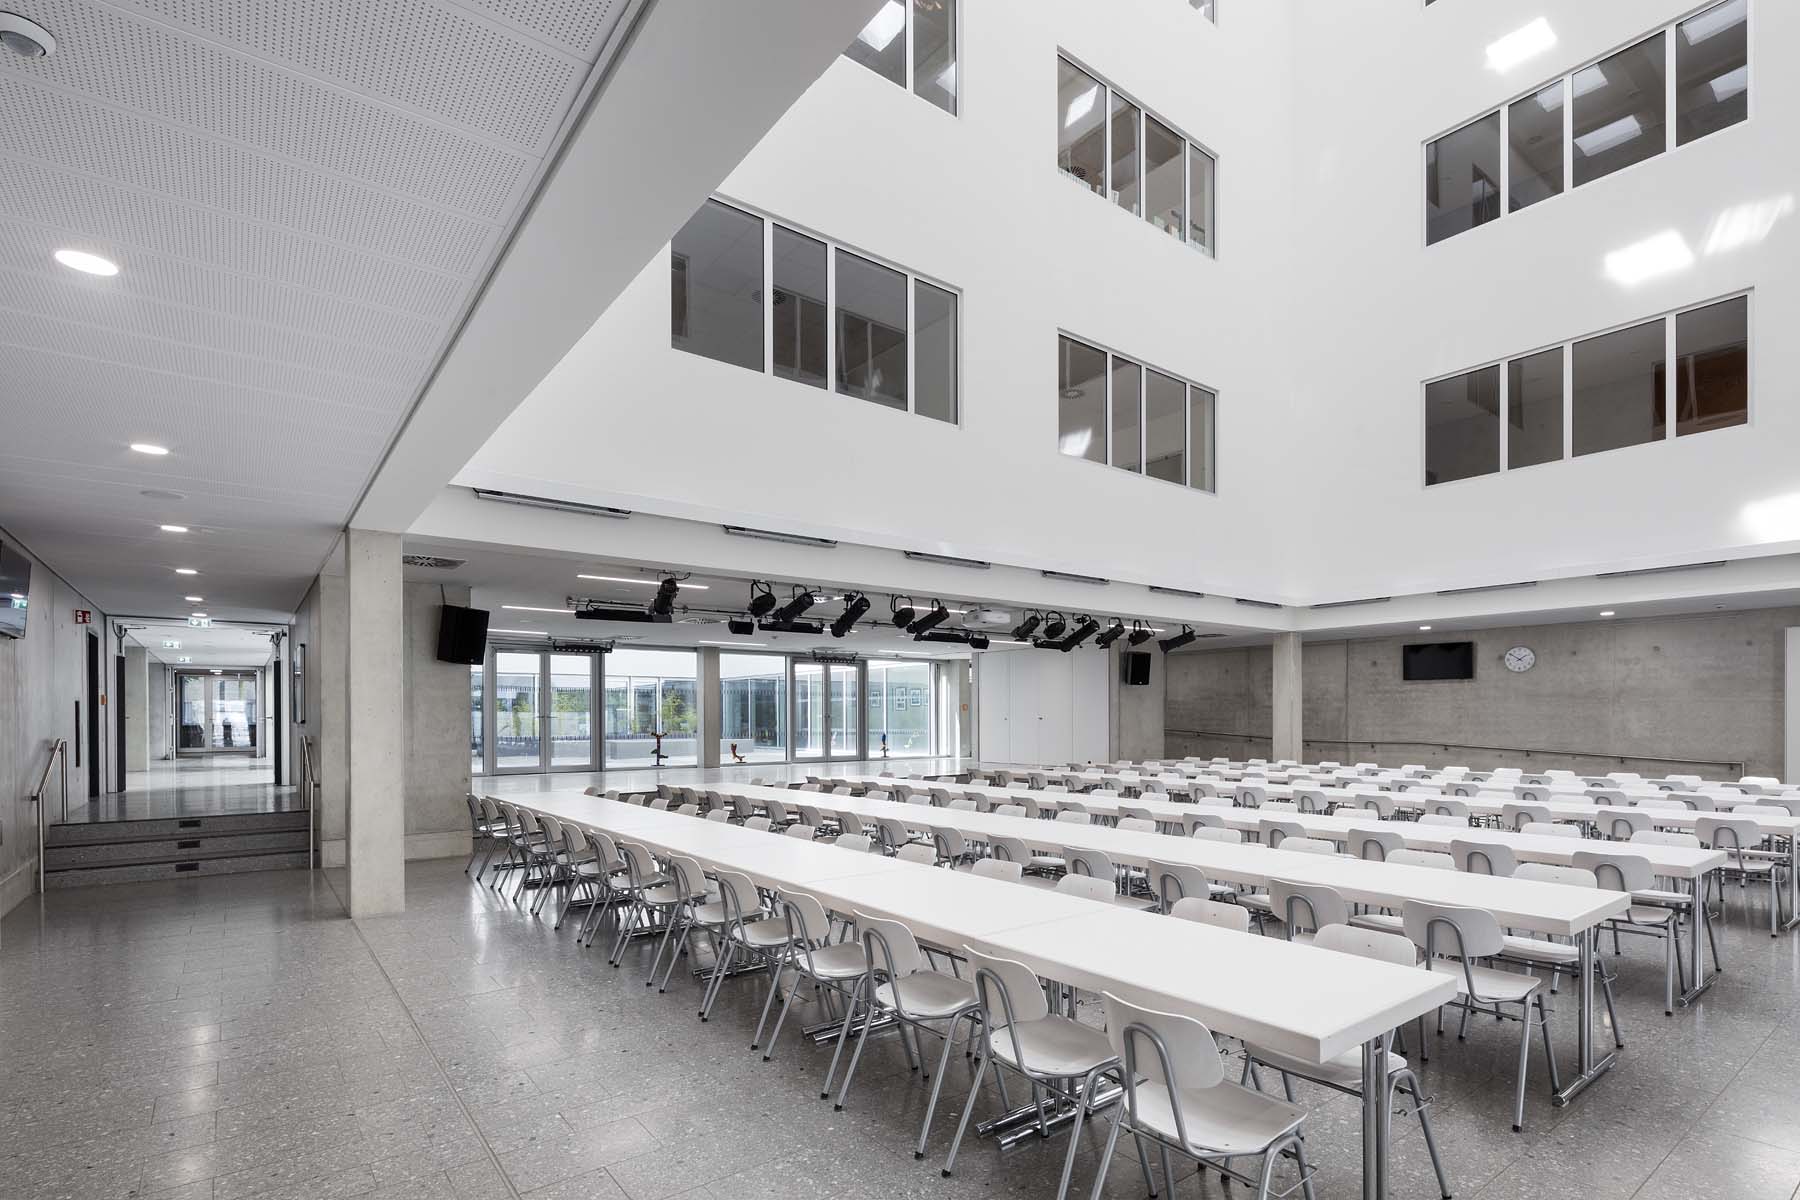 Marie Kahle Gesamtschule Bonn  Hahn Helten Architekten   Architekturfotografie Jens Kirchner